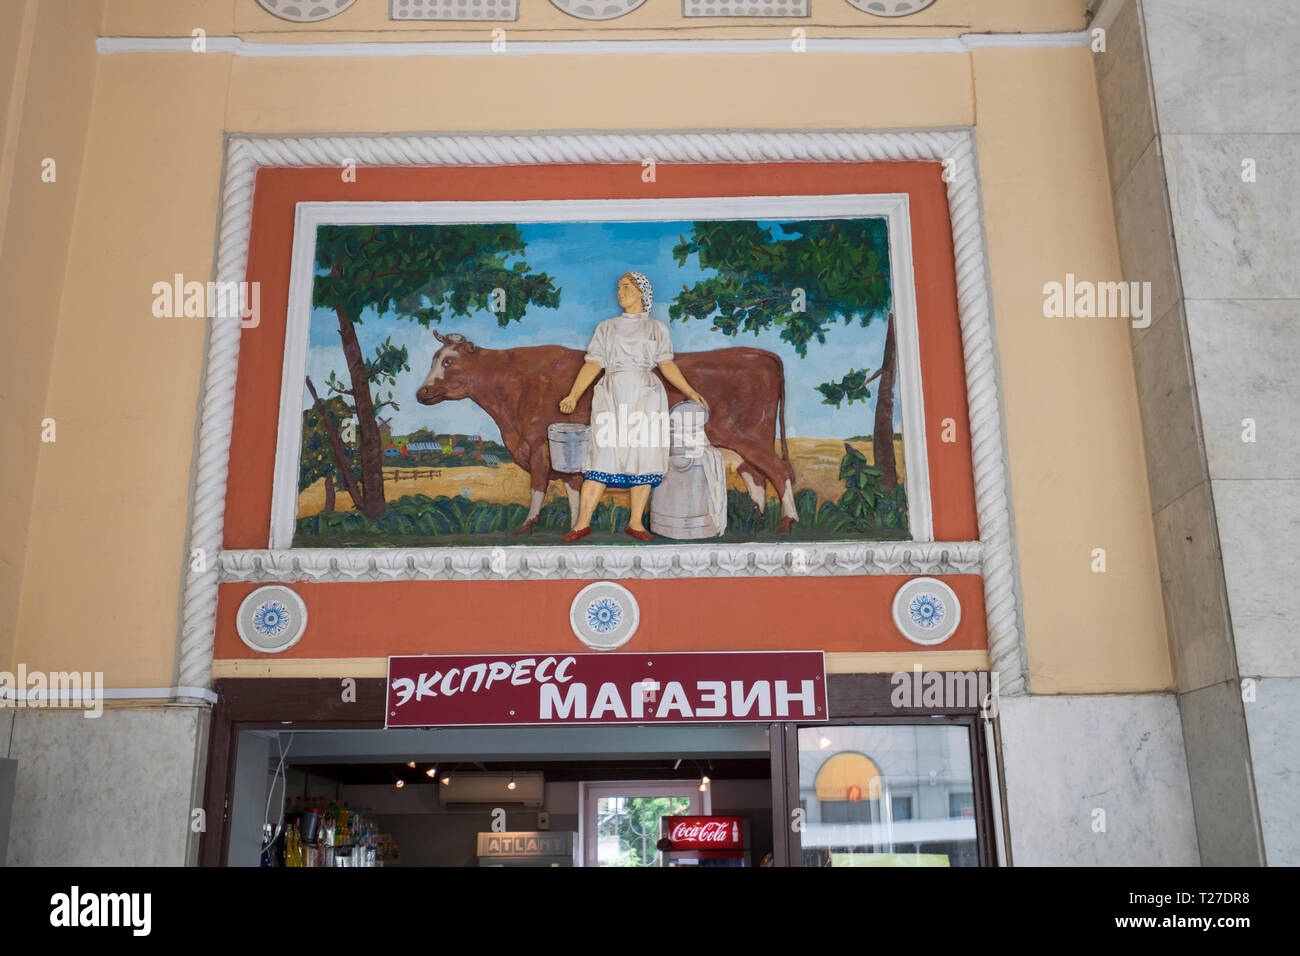 Centraĺny Supermarkt, Cafe, mit seinen historischen angehoben Wandmalereien des Alltags in Minsk, Belarus. Stockfoto